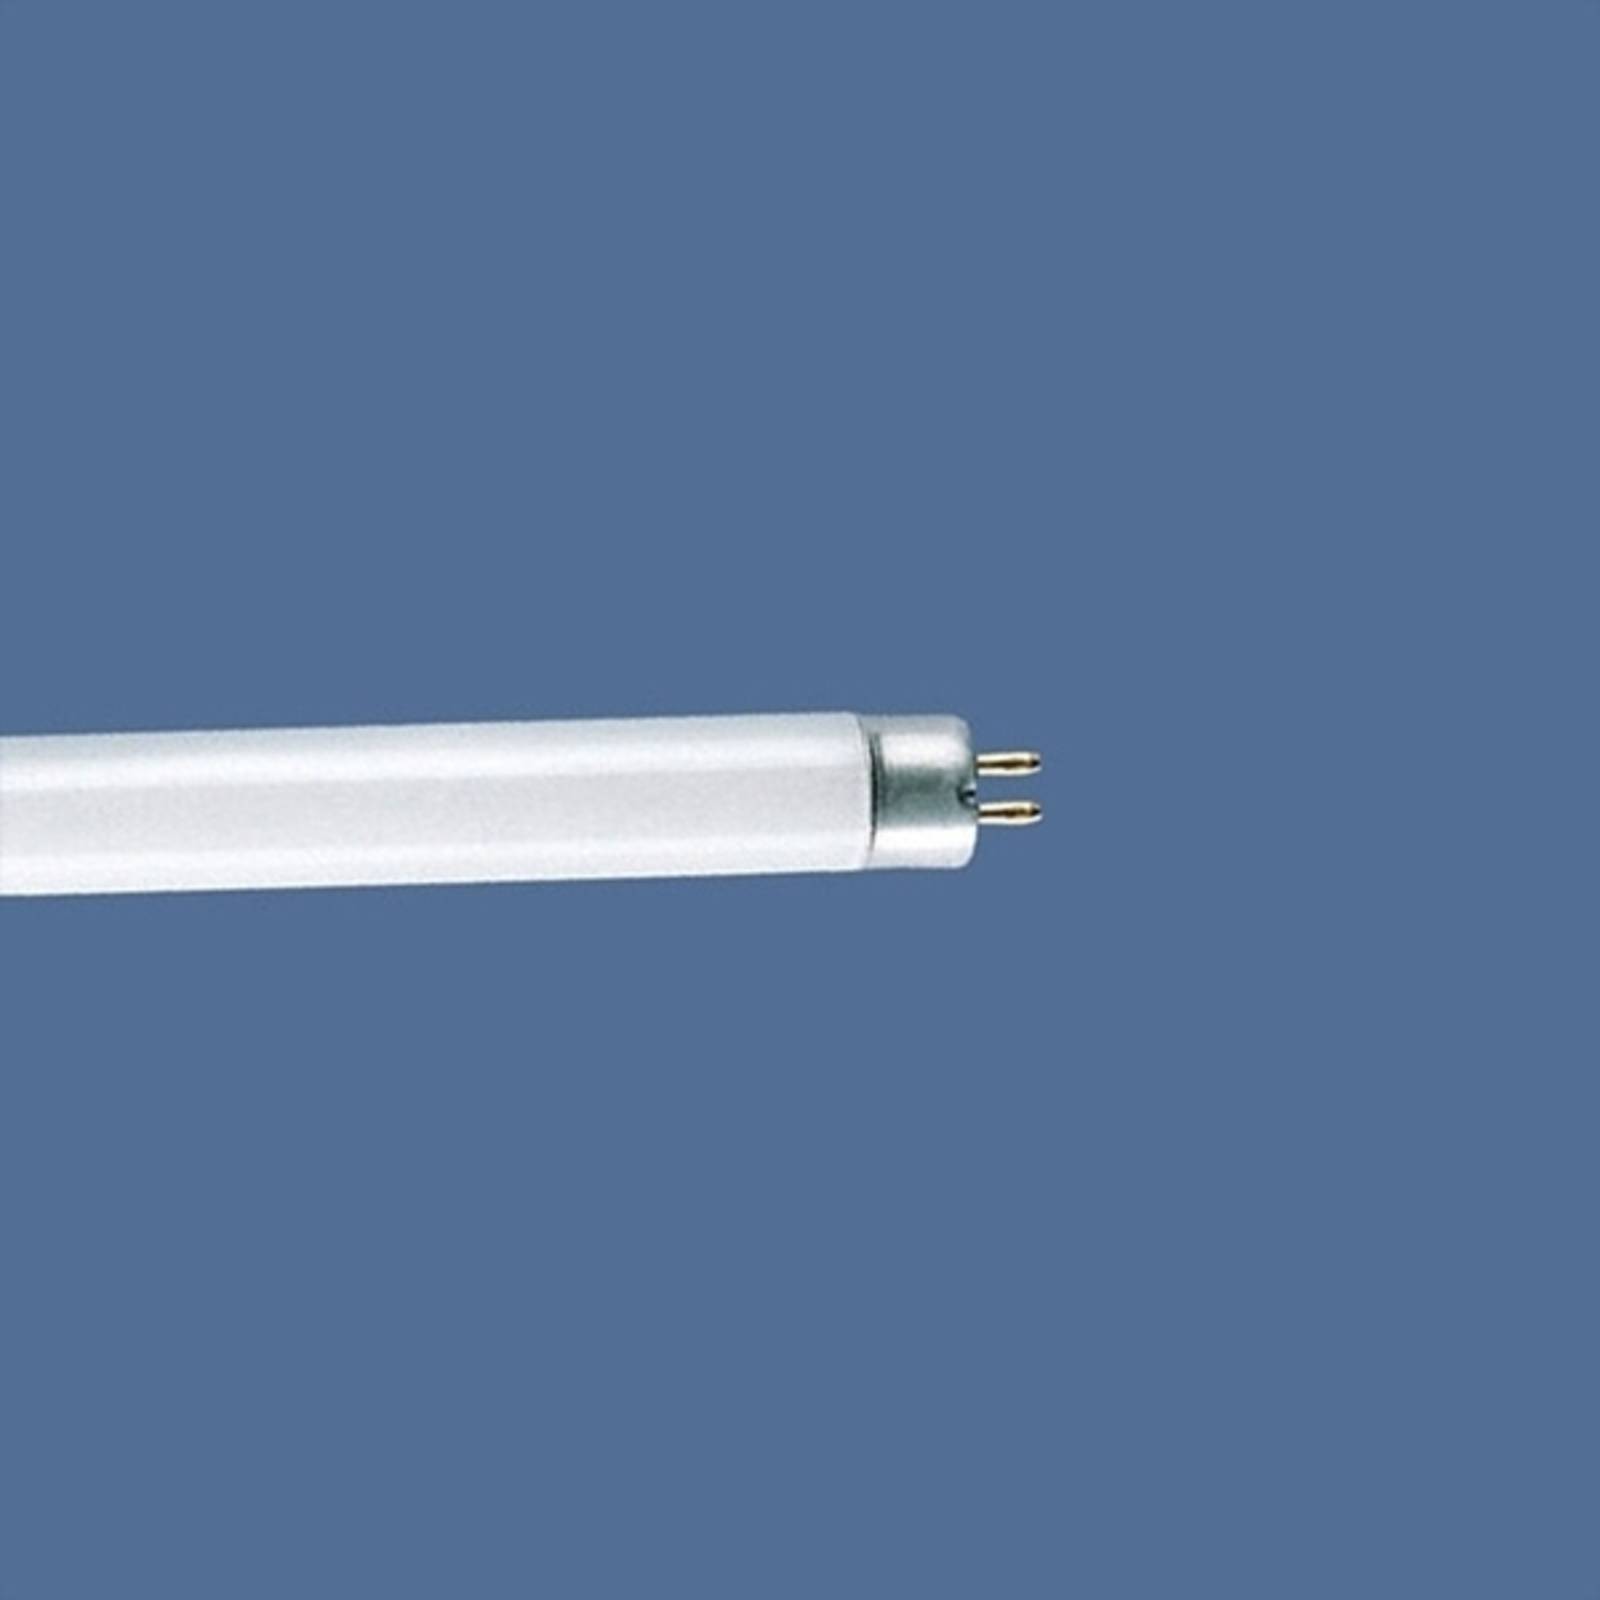 Heitronic Leuchtstoffröhre T4 8W Standard ww